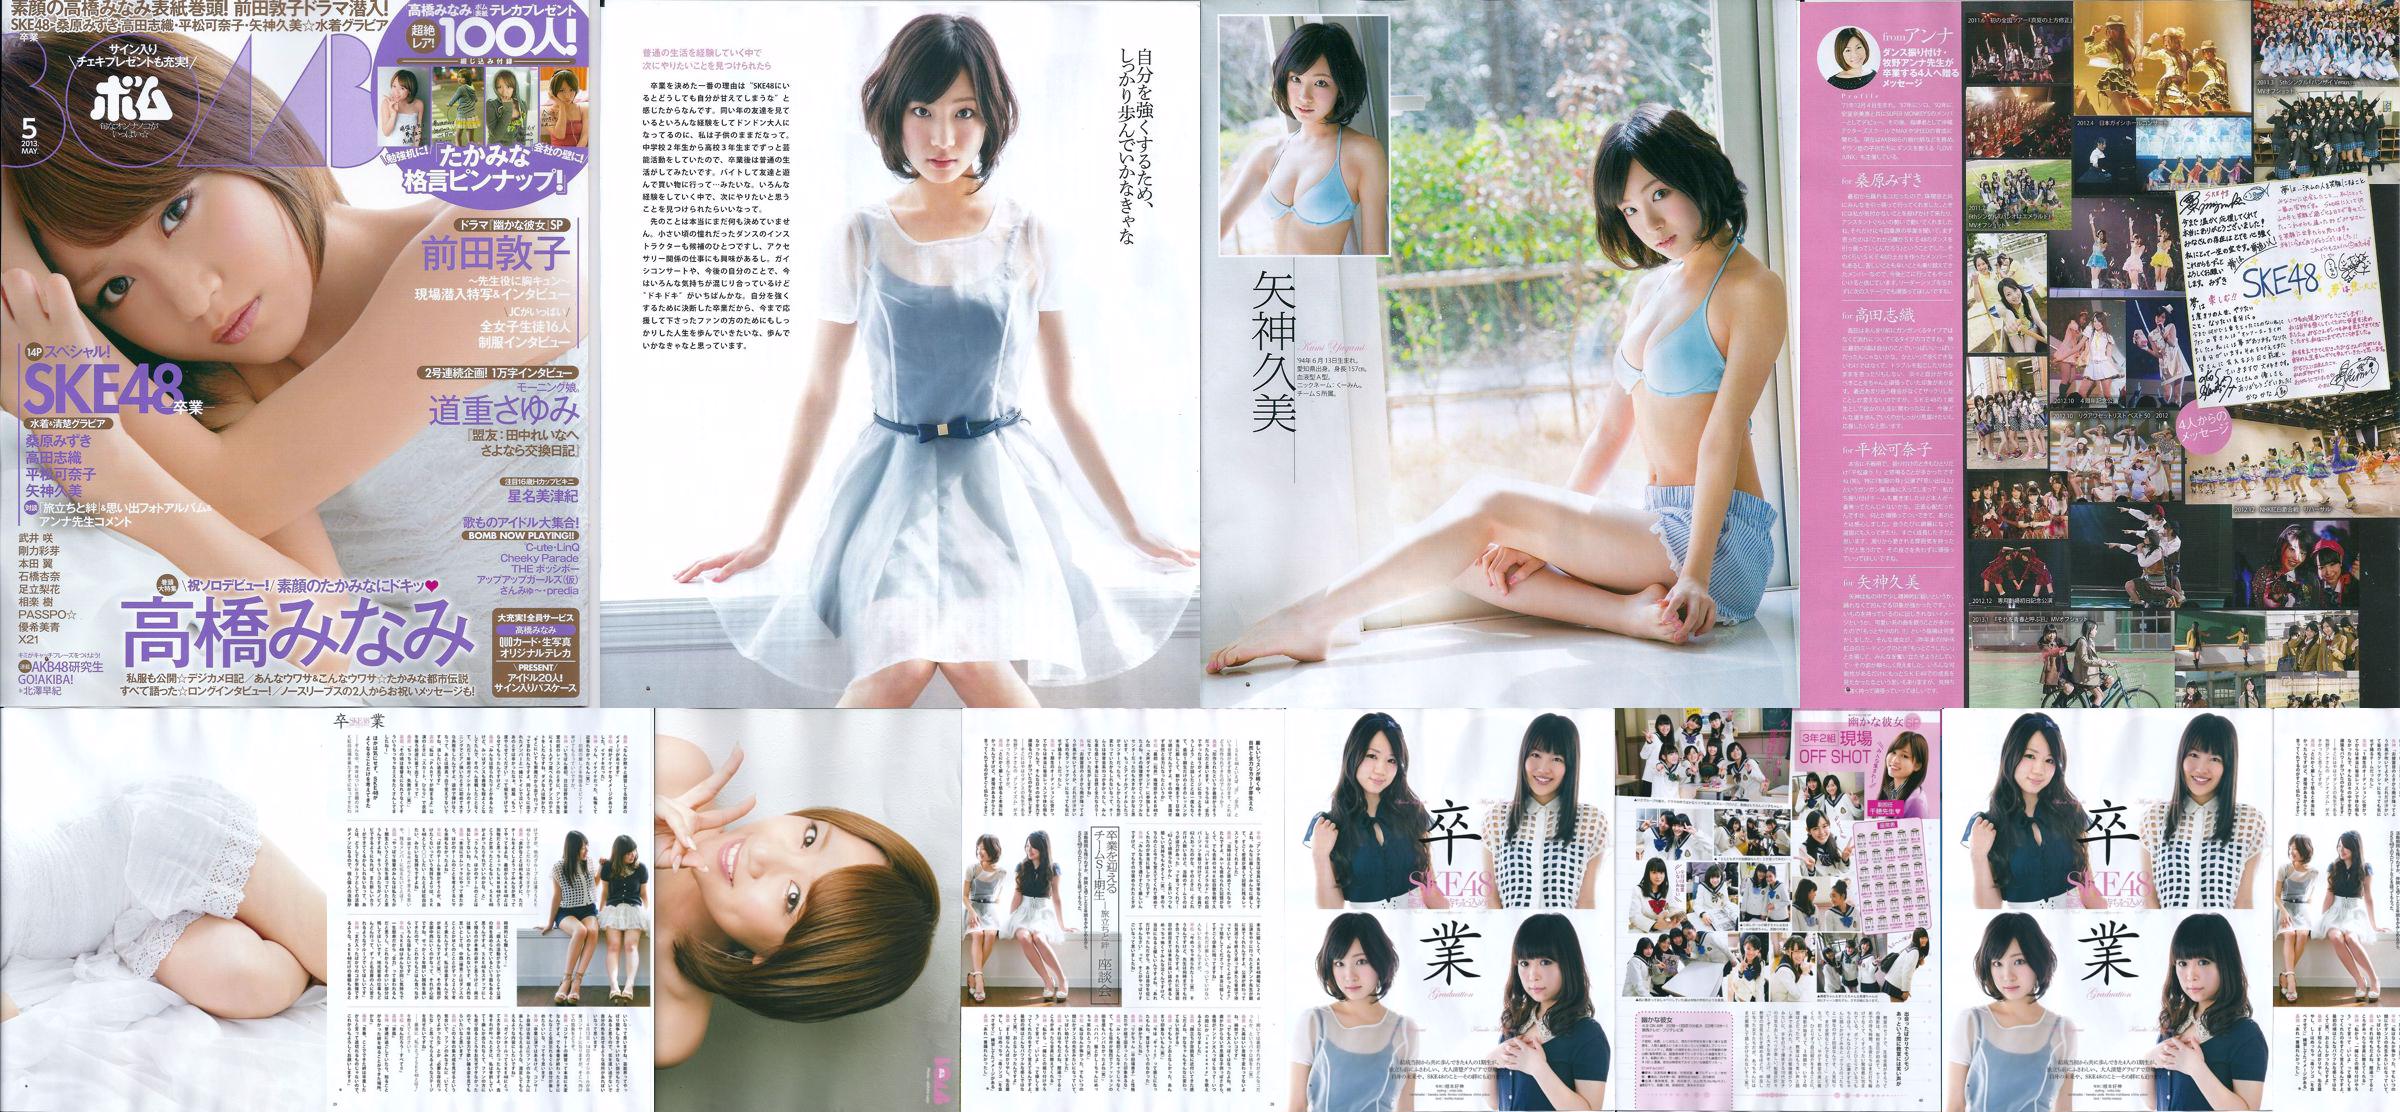 [Tạp chí bom] Số 05 năm 2013 Kumi Yagami Minami Takahashi Atsuko Maeda Photo No.5bfff6 Trang 4